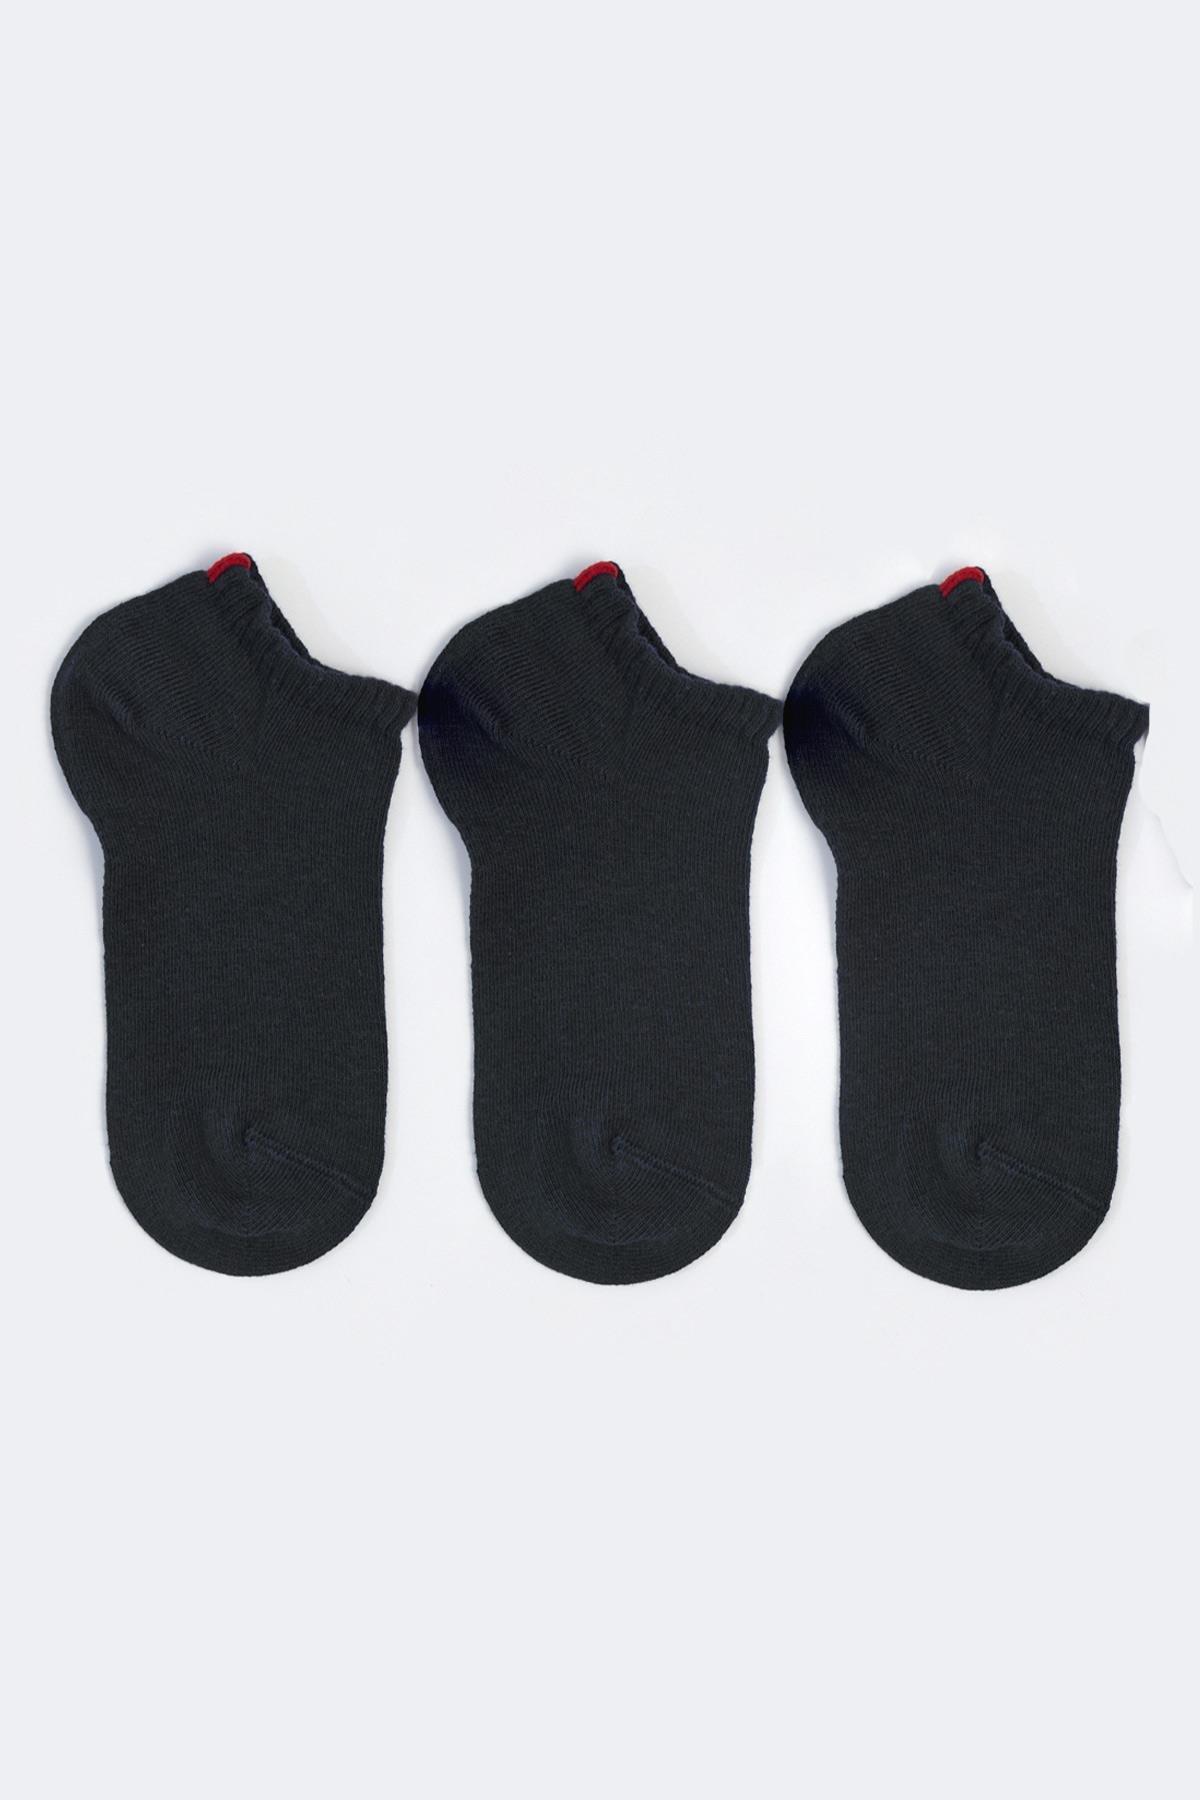 Run 3 lü Erkek Basic Patik Çorap Siyah/Siyah/Siyah